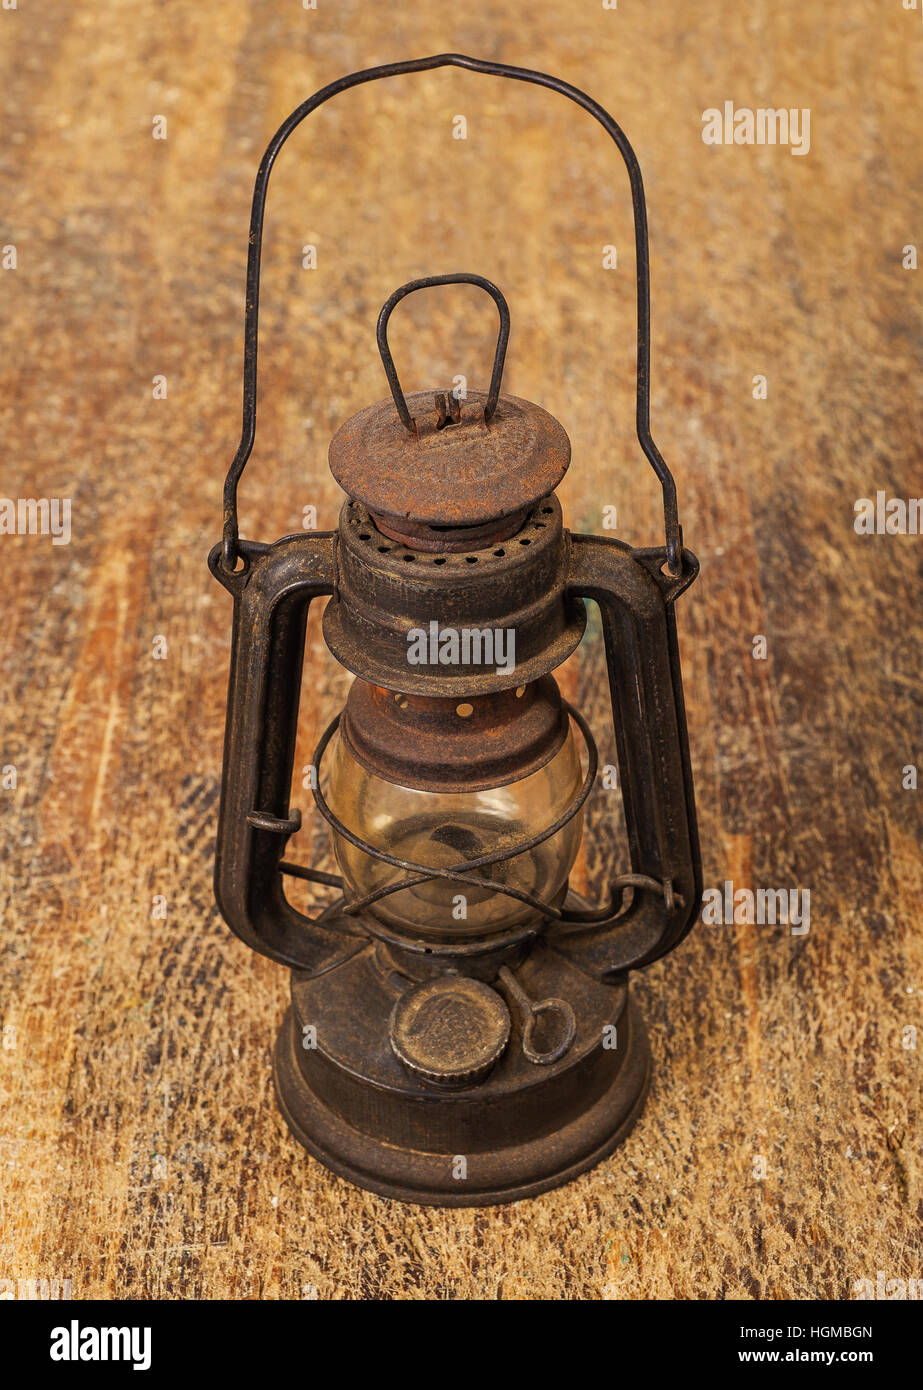 alte rostige Lampe auf Holz Hintergrund Stockfotografie - Alamy